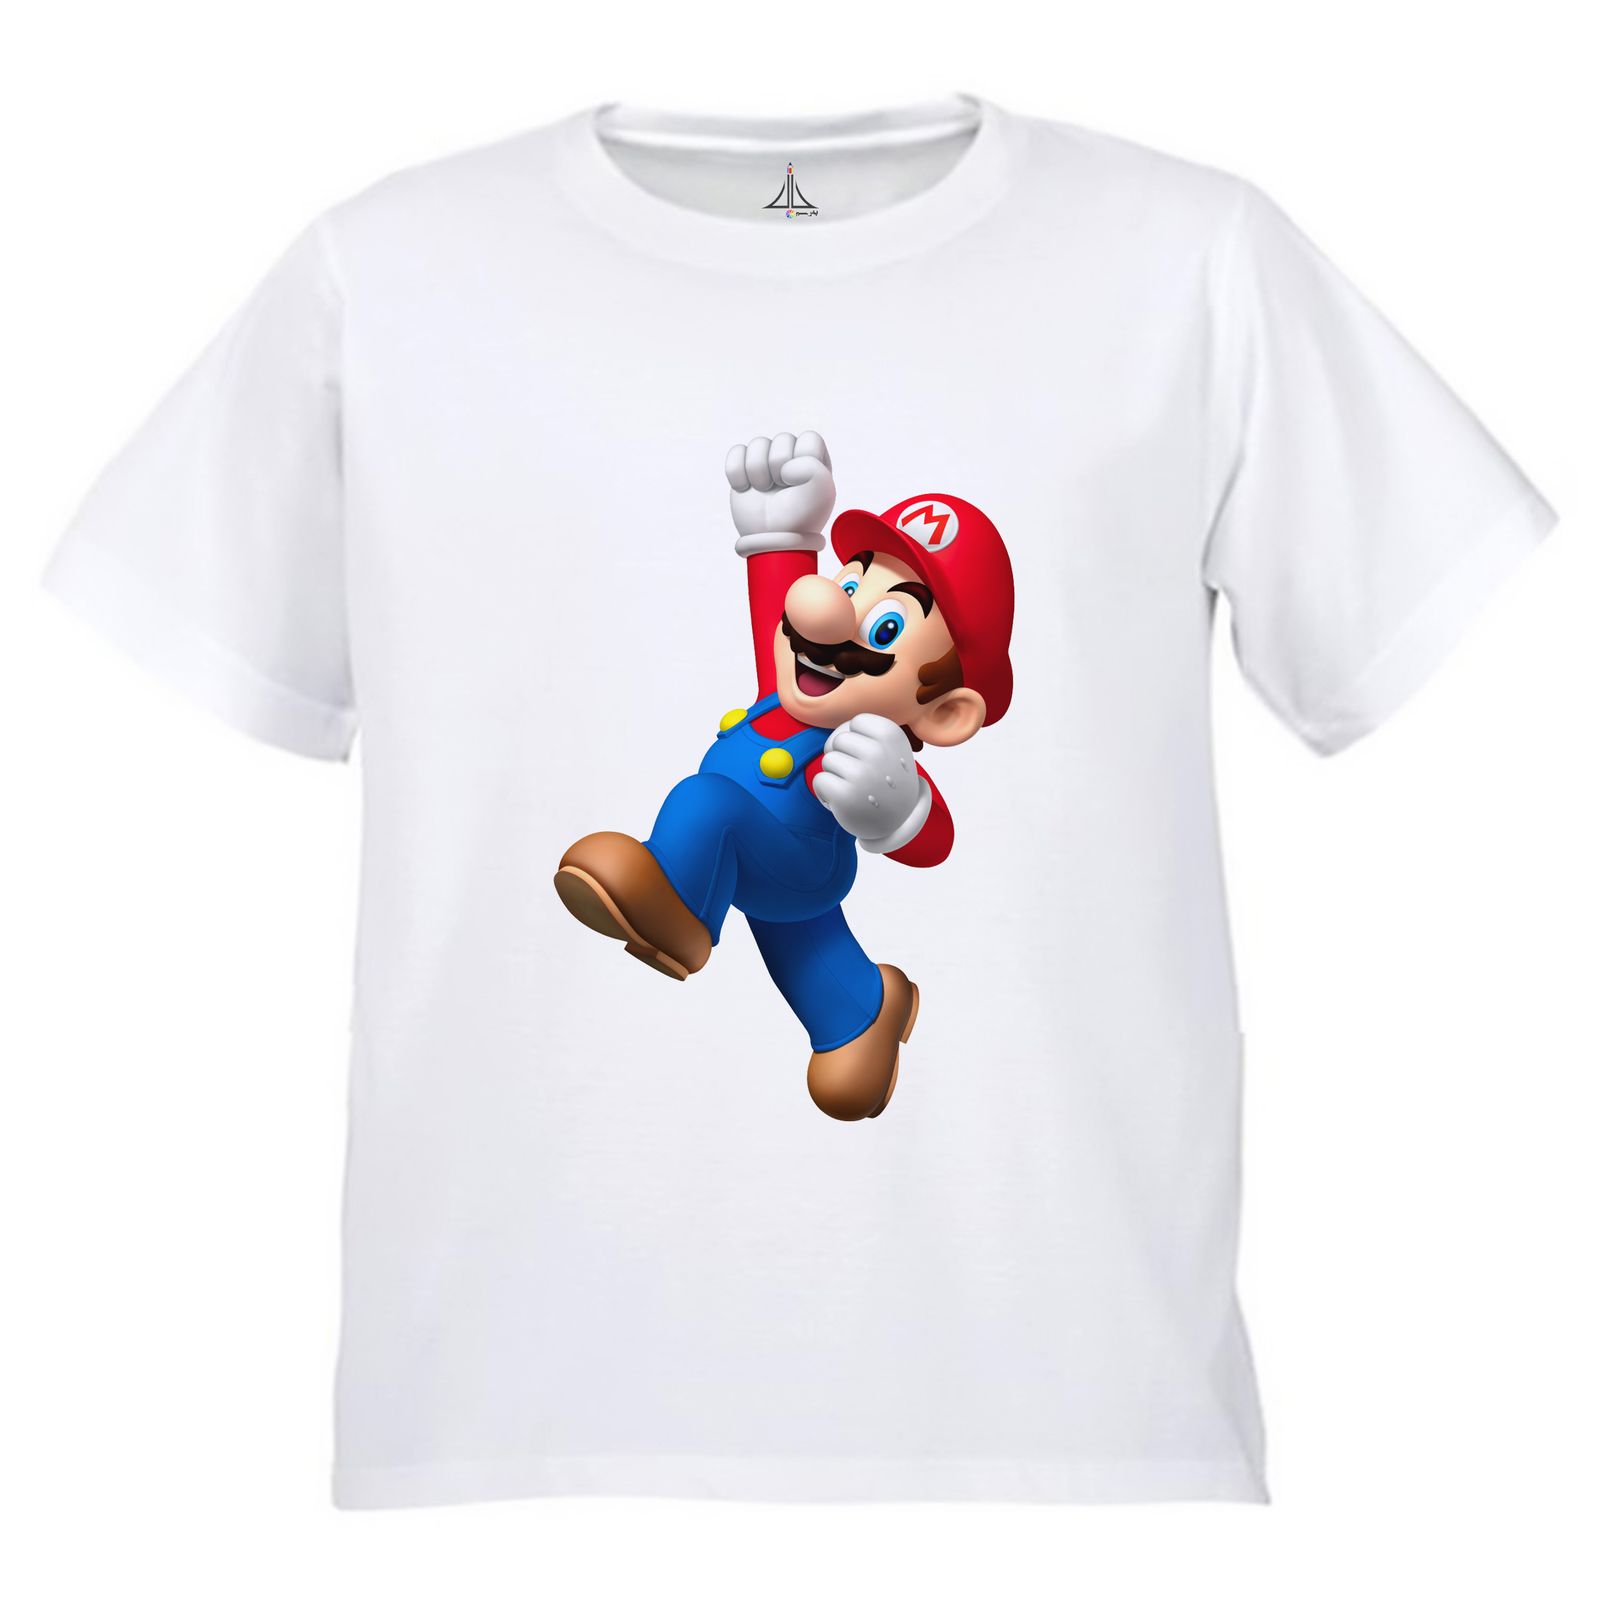 تی شرت آستین کوتاه بچگانه به رسم مدل سوپر ماریو کد 9943 -  - 3